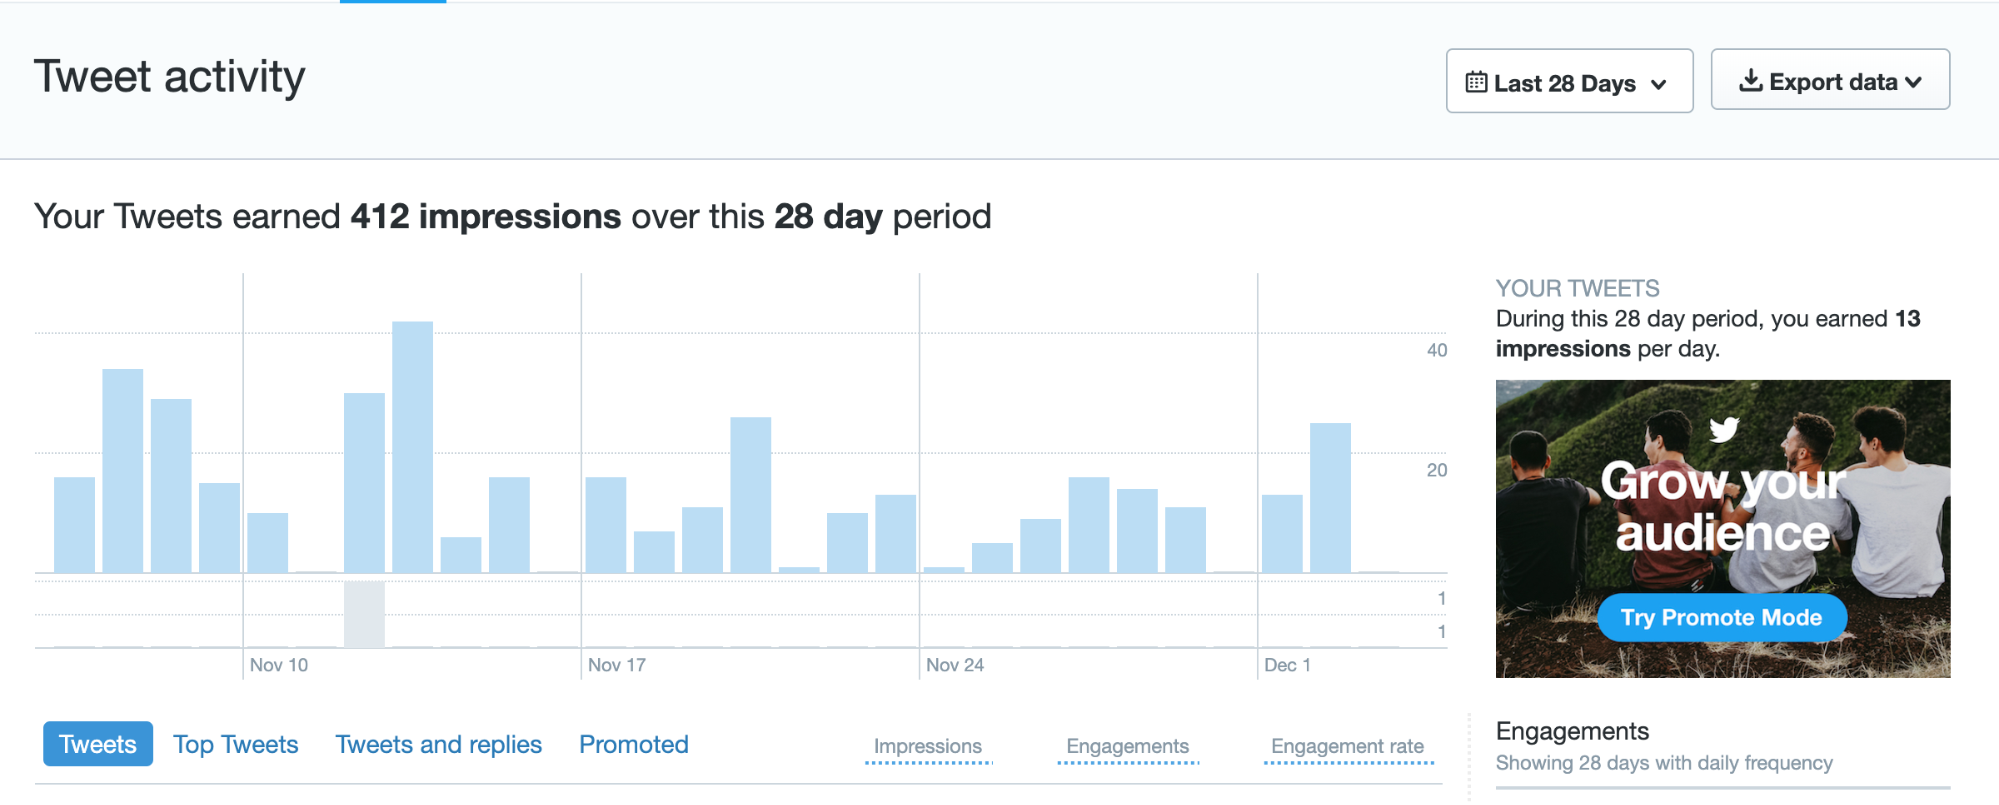 Twitter analytics dashboard